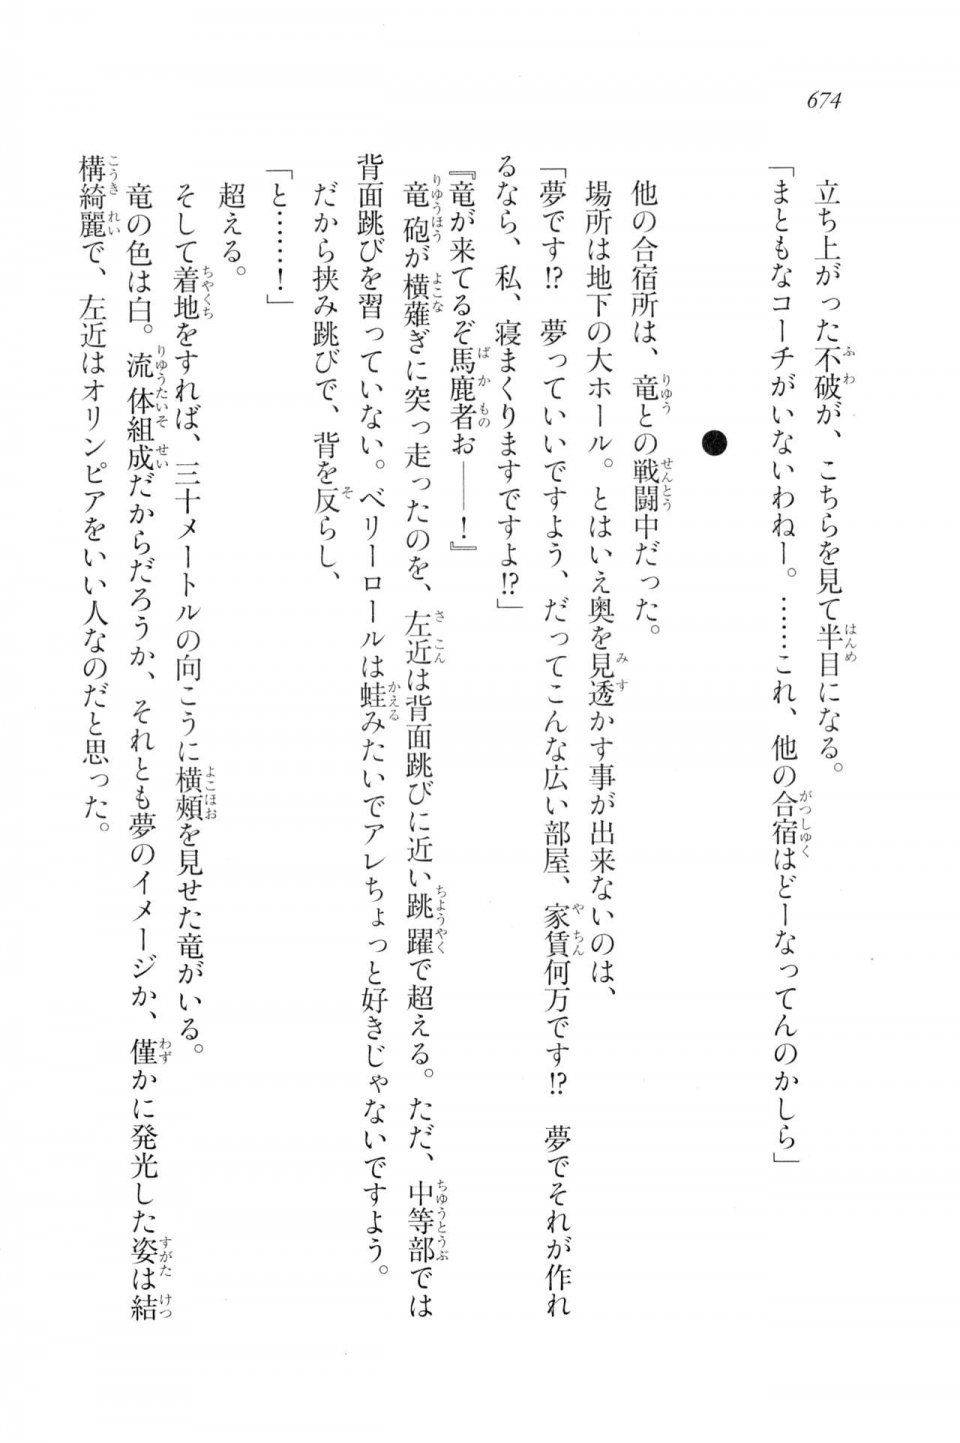 Kyoukai Senjou no Horizon LN Vol 20(8B) - Photo #674